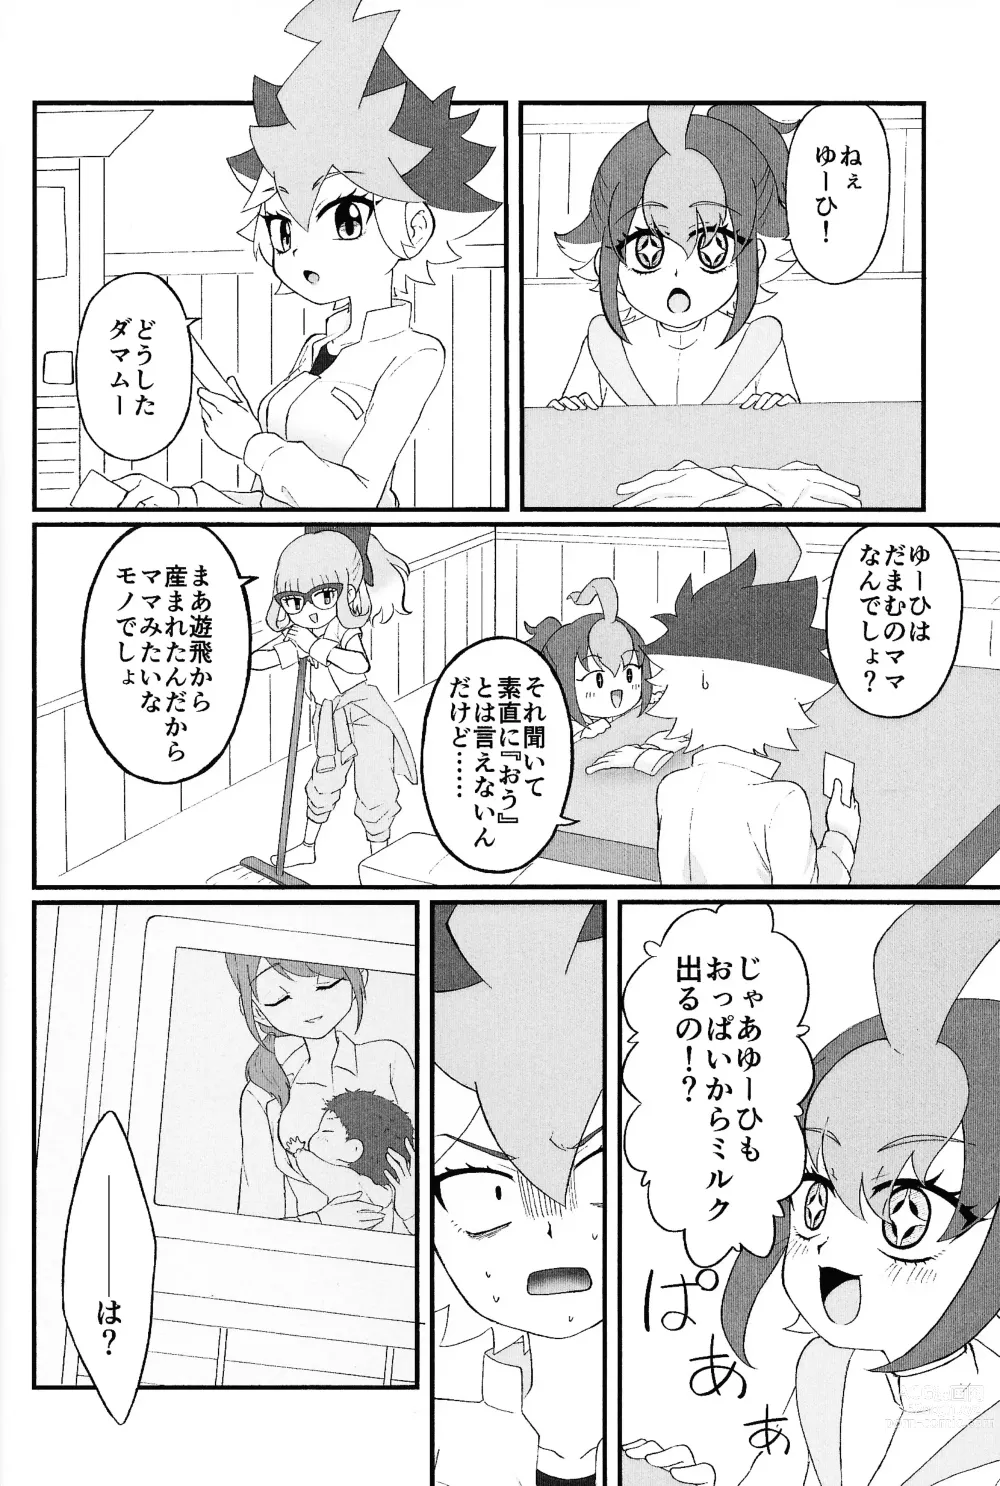 Page 3 of doujinshi Pandoranohako ka kindan no kajitsu ka